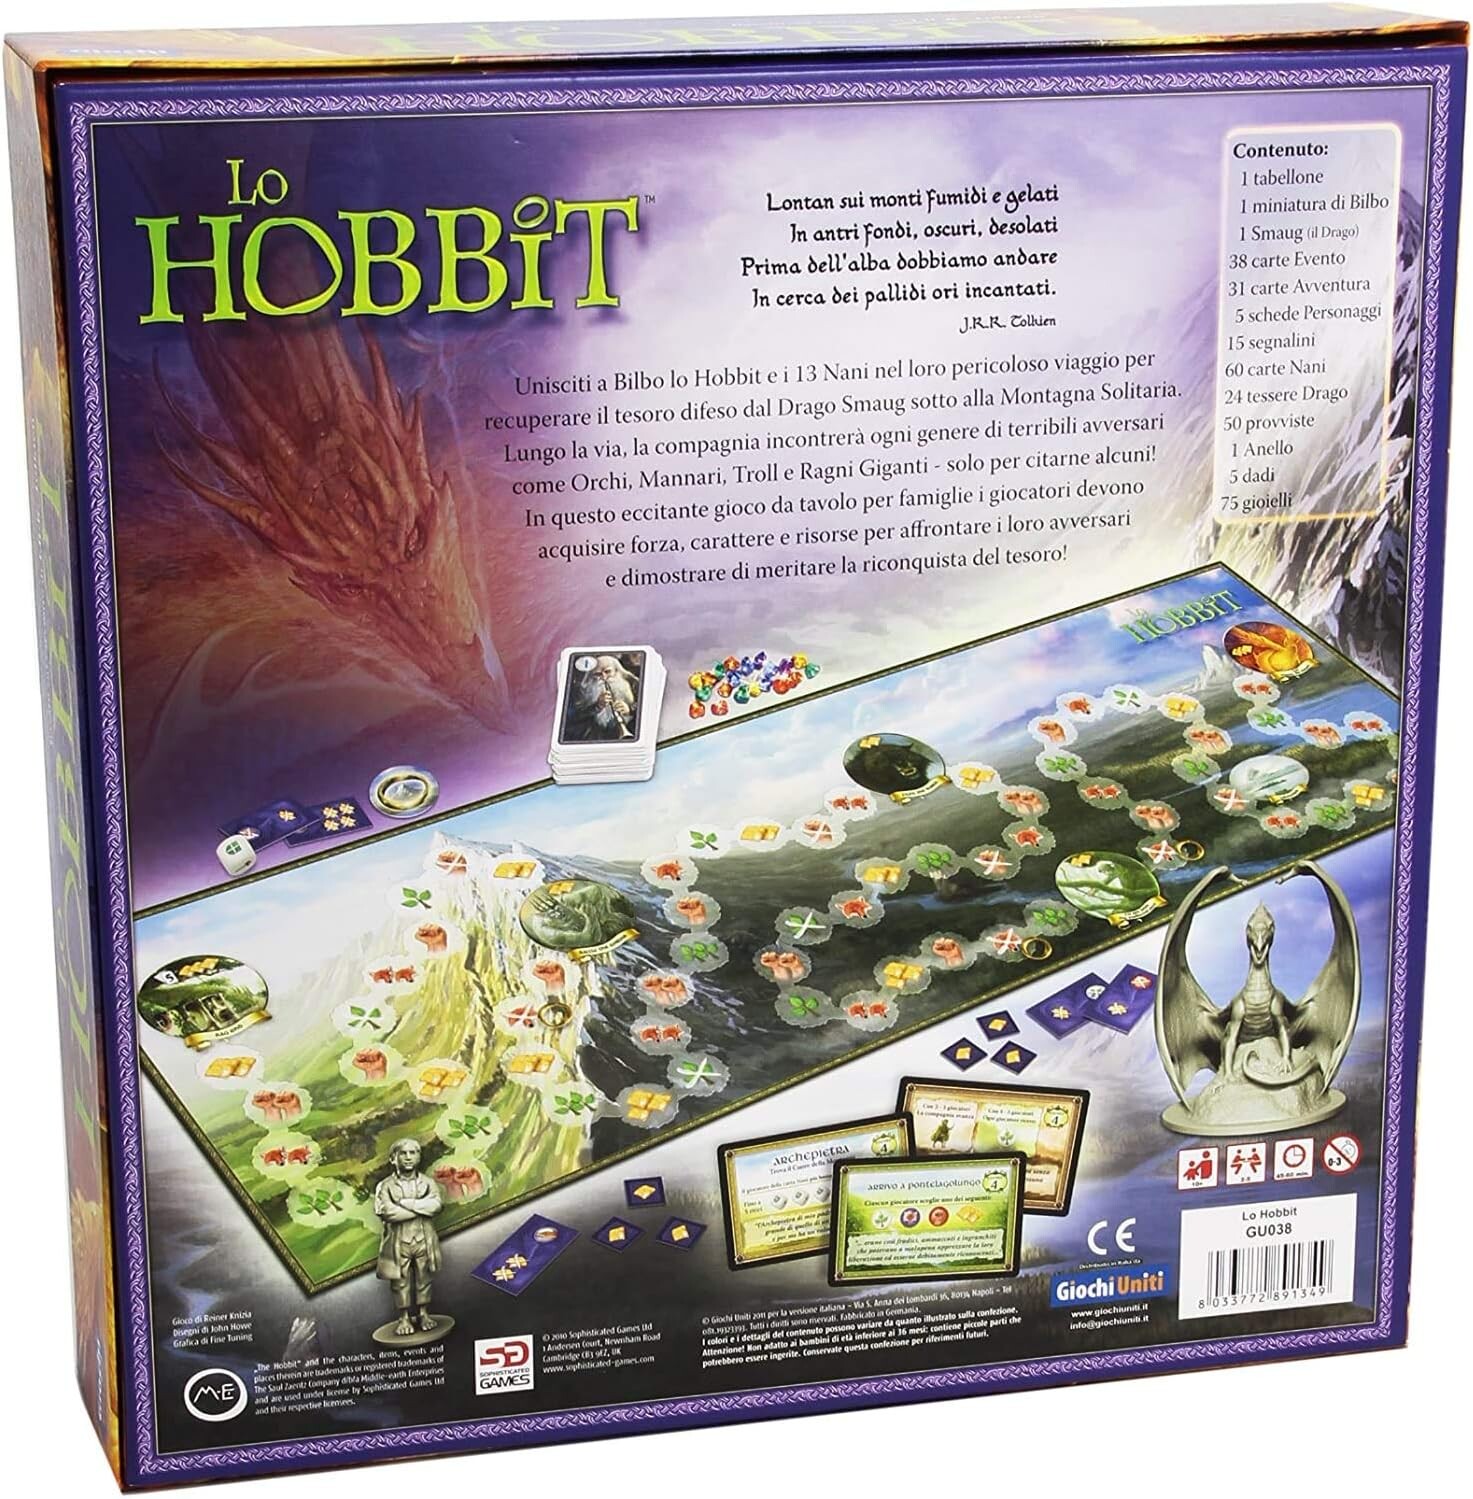 Lo hobbit - gioco da tavolo - edizione italiana - gu038 - 